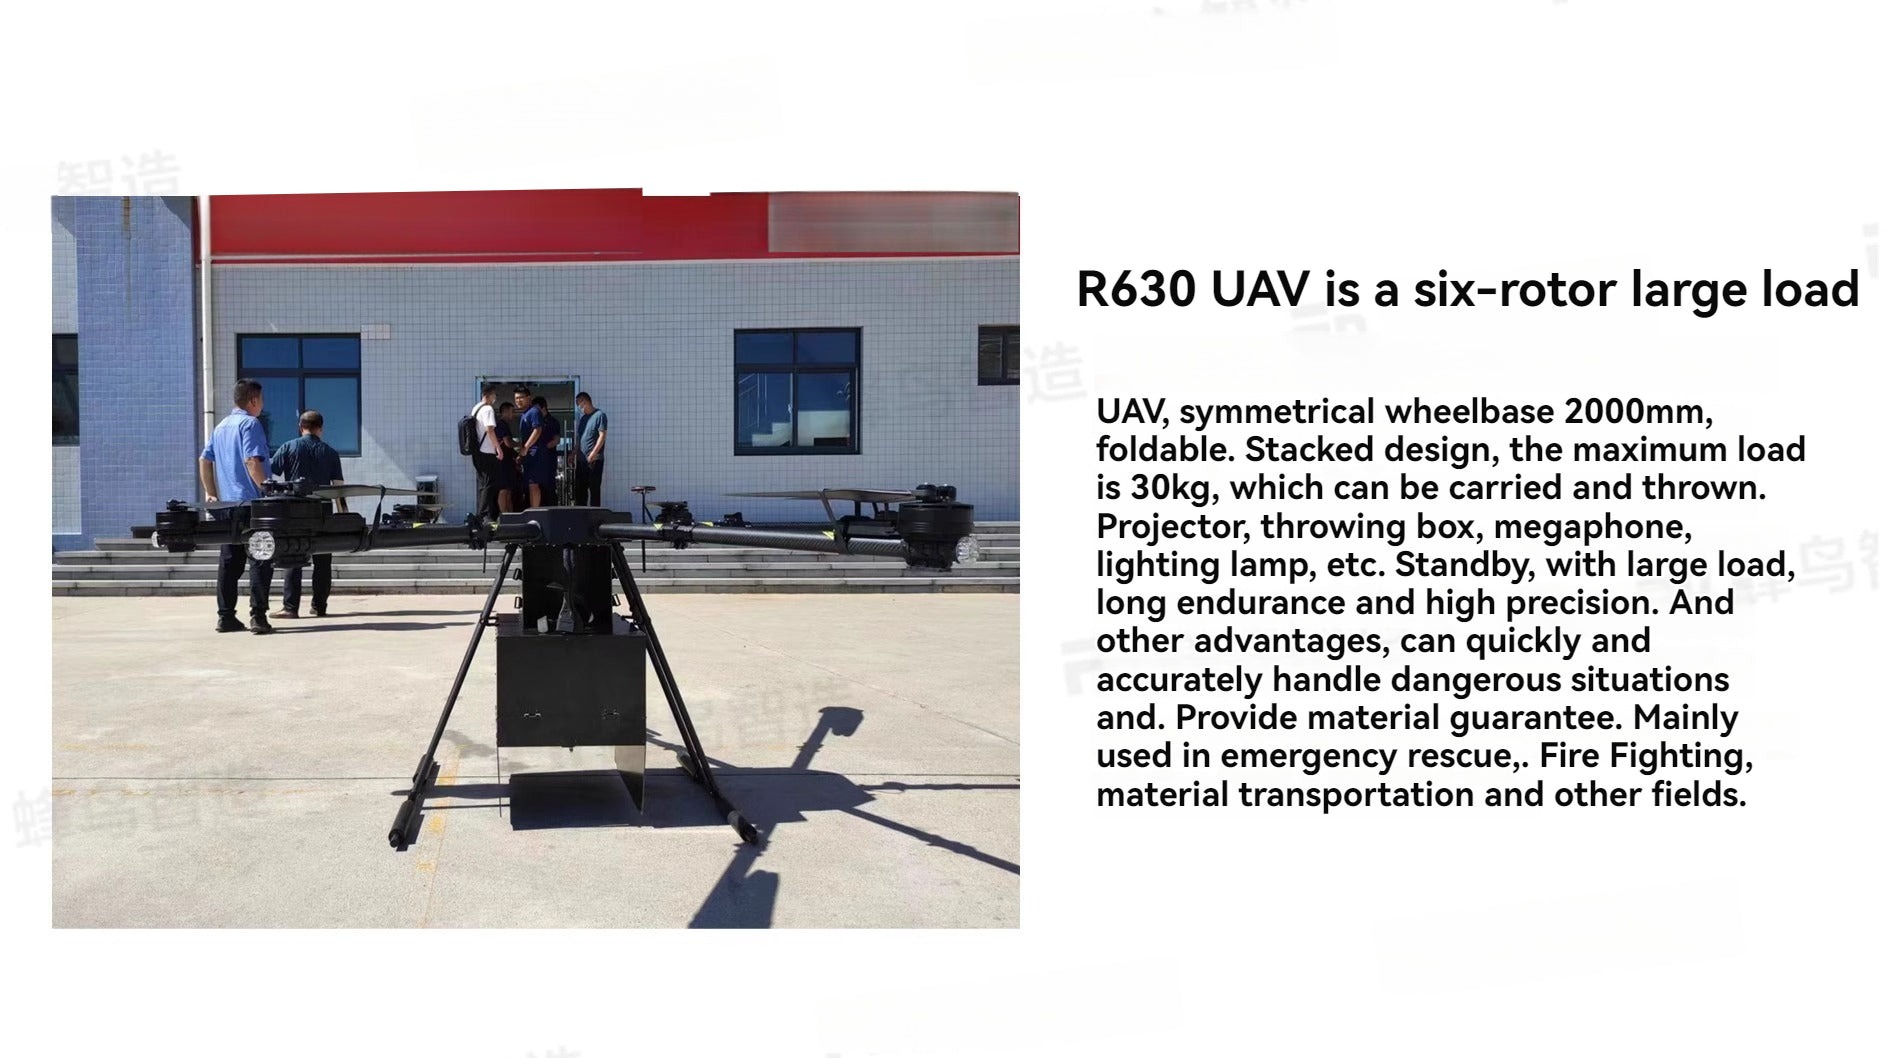 RCDrone, six-rotor large load UAV, symmetrical wheelbase 200Omm, fold